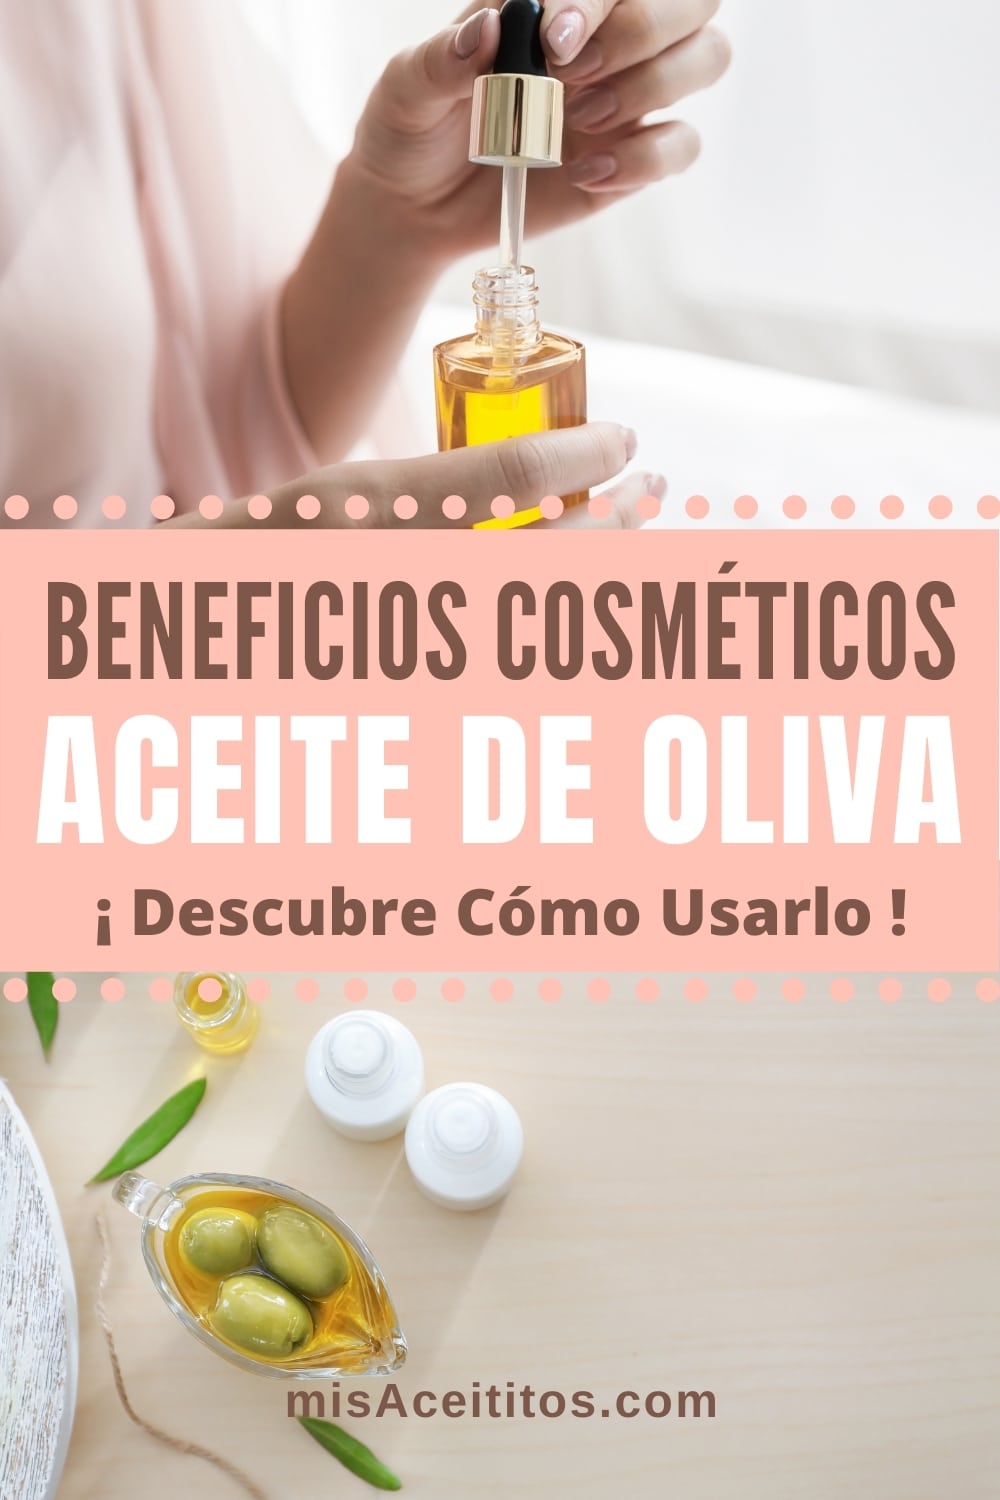 Aceite de oliva para usos cosméticos y sus beneficios